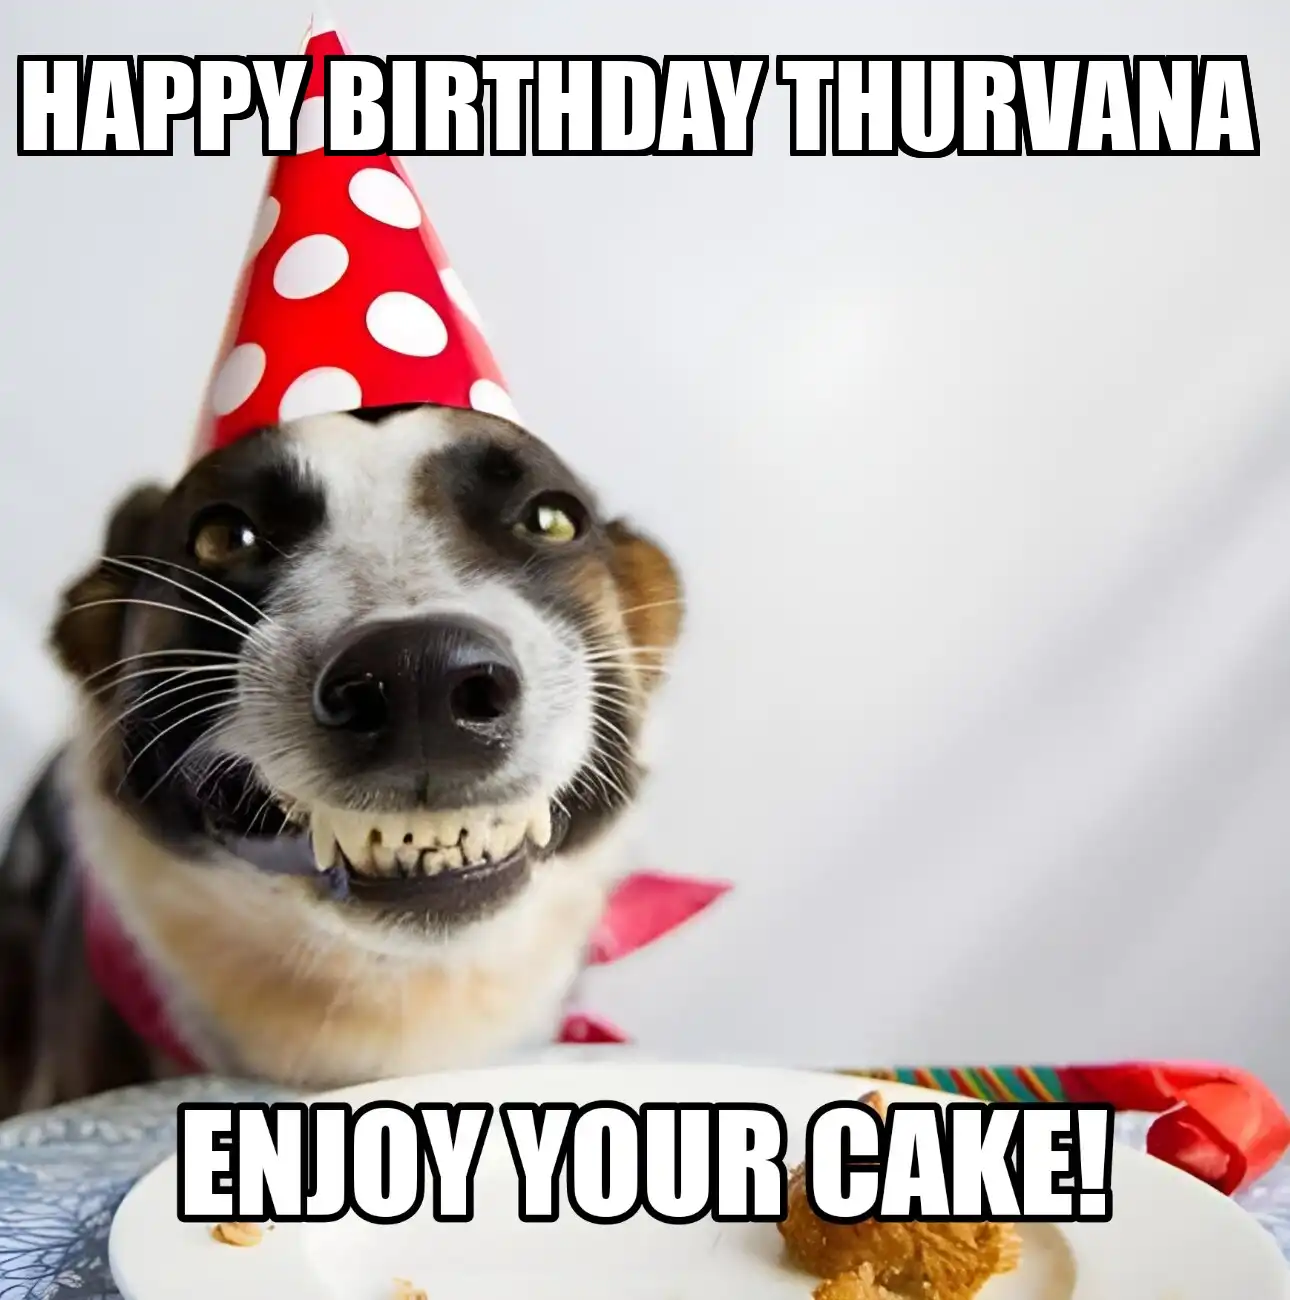 Happy Birthday Thurvana Enjoy Your Cake Dog Meme